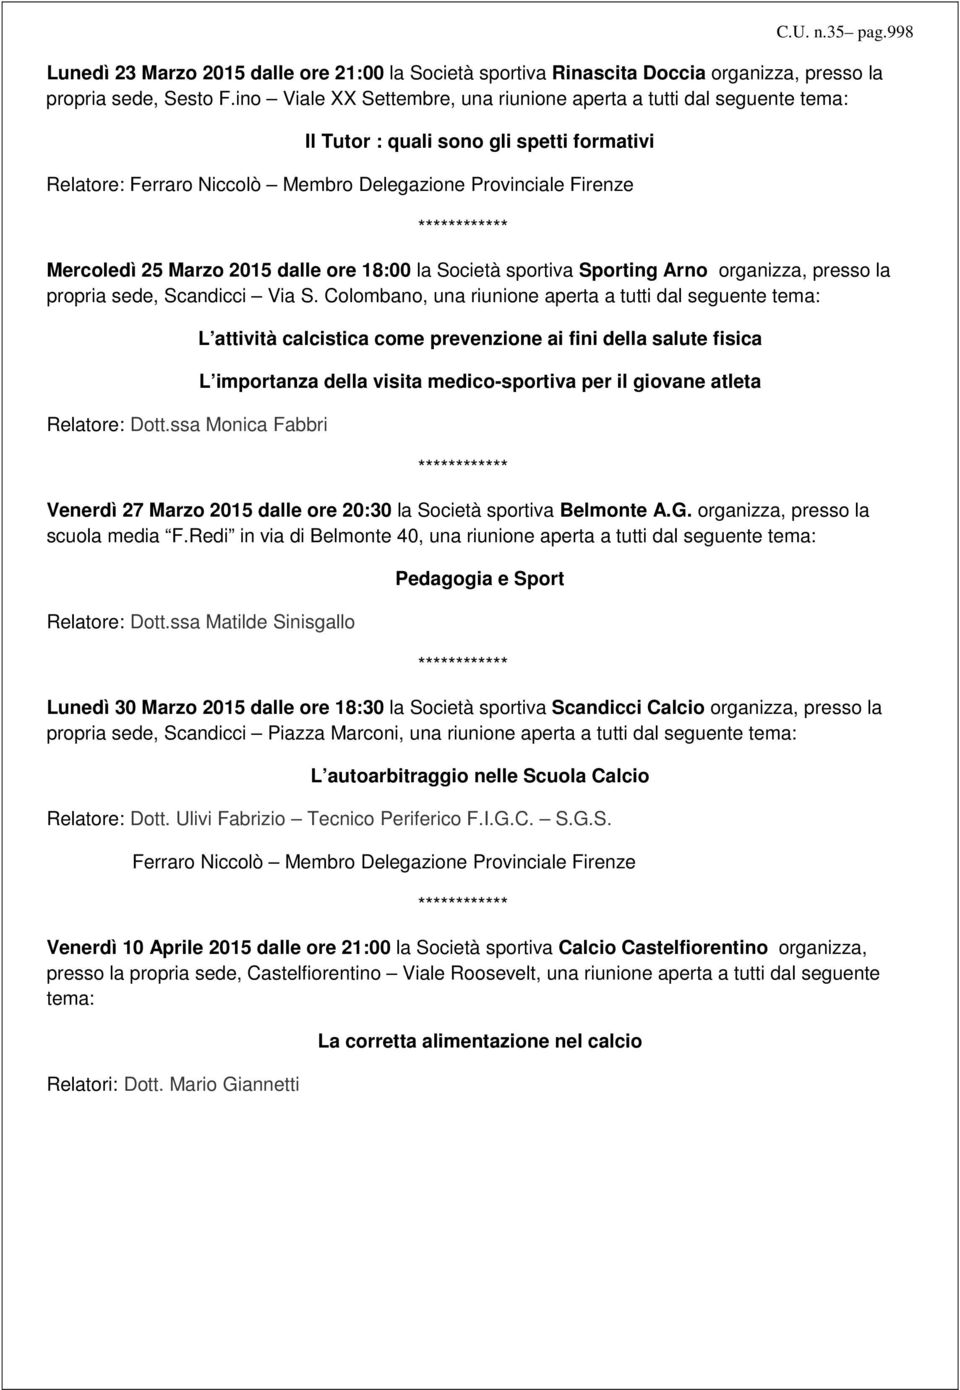 Mercoledì 25 Marzo 2015 dalle ore 18:00 la Società sportiva Sporting Arno organizza, presso la propria sede, Scandicci Via S. Colombano, una riunione aperta a tutti dal seguente tema: Relatore: Dott.